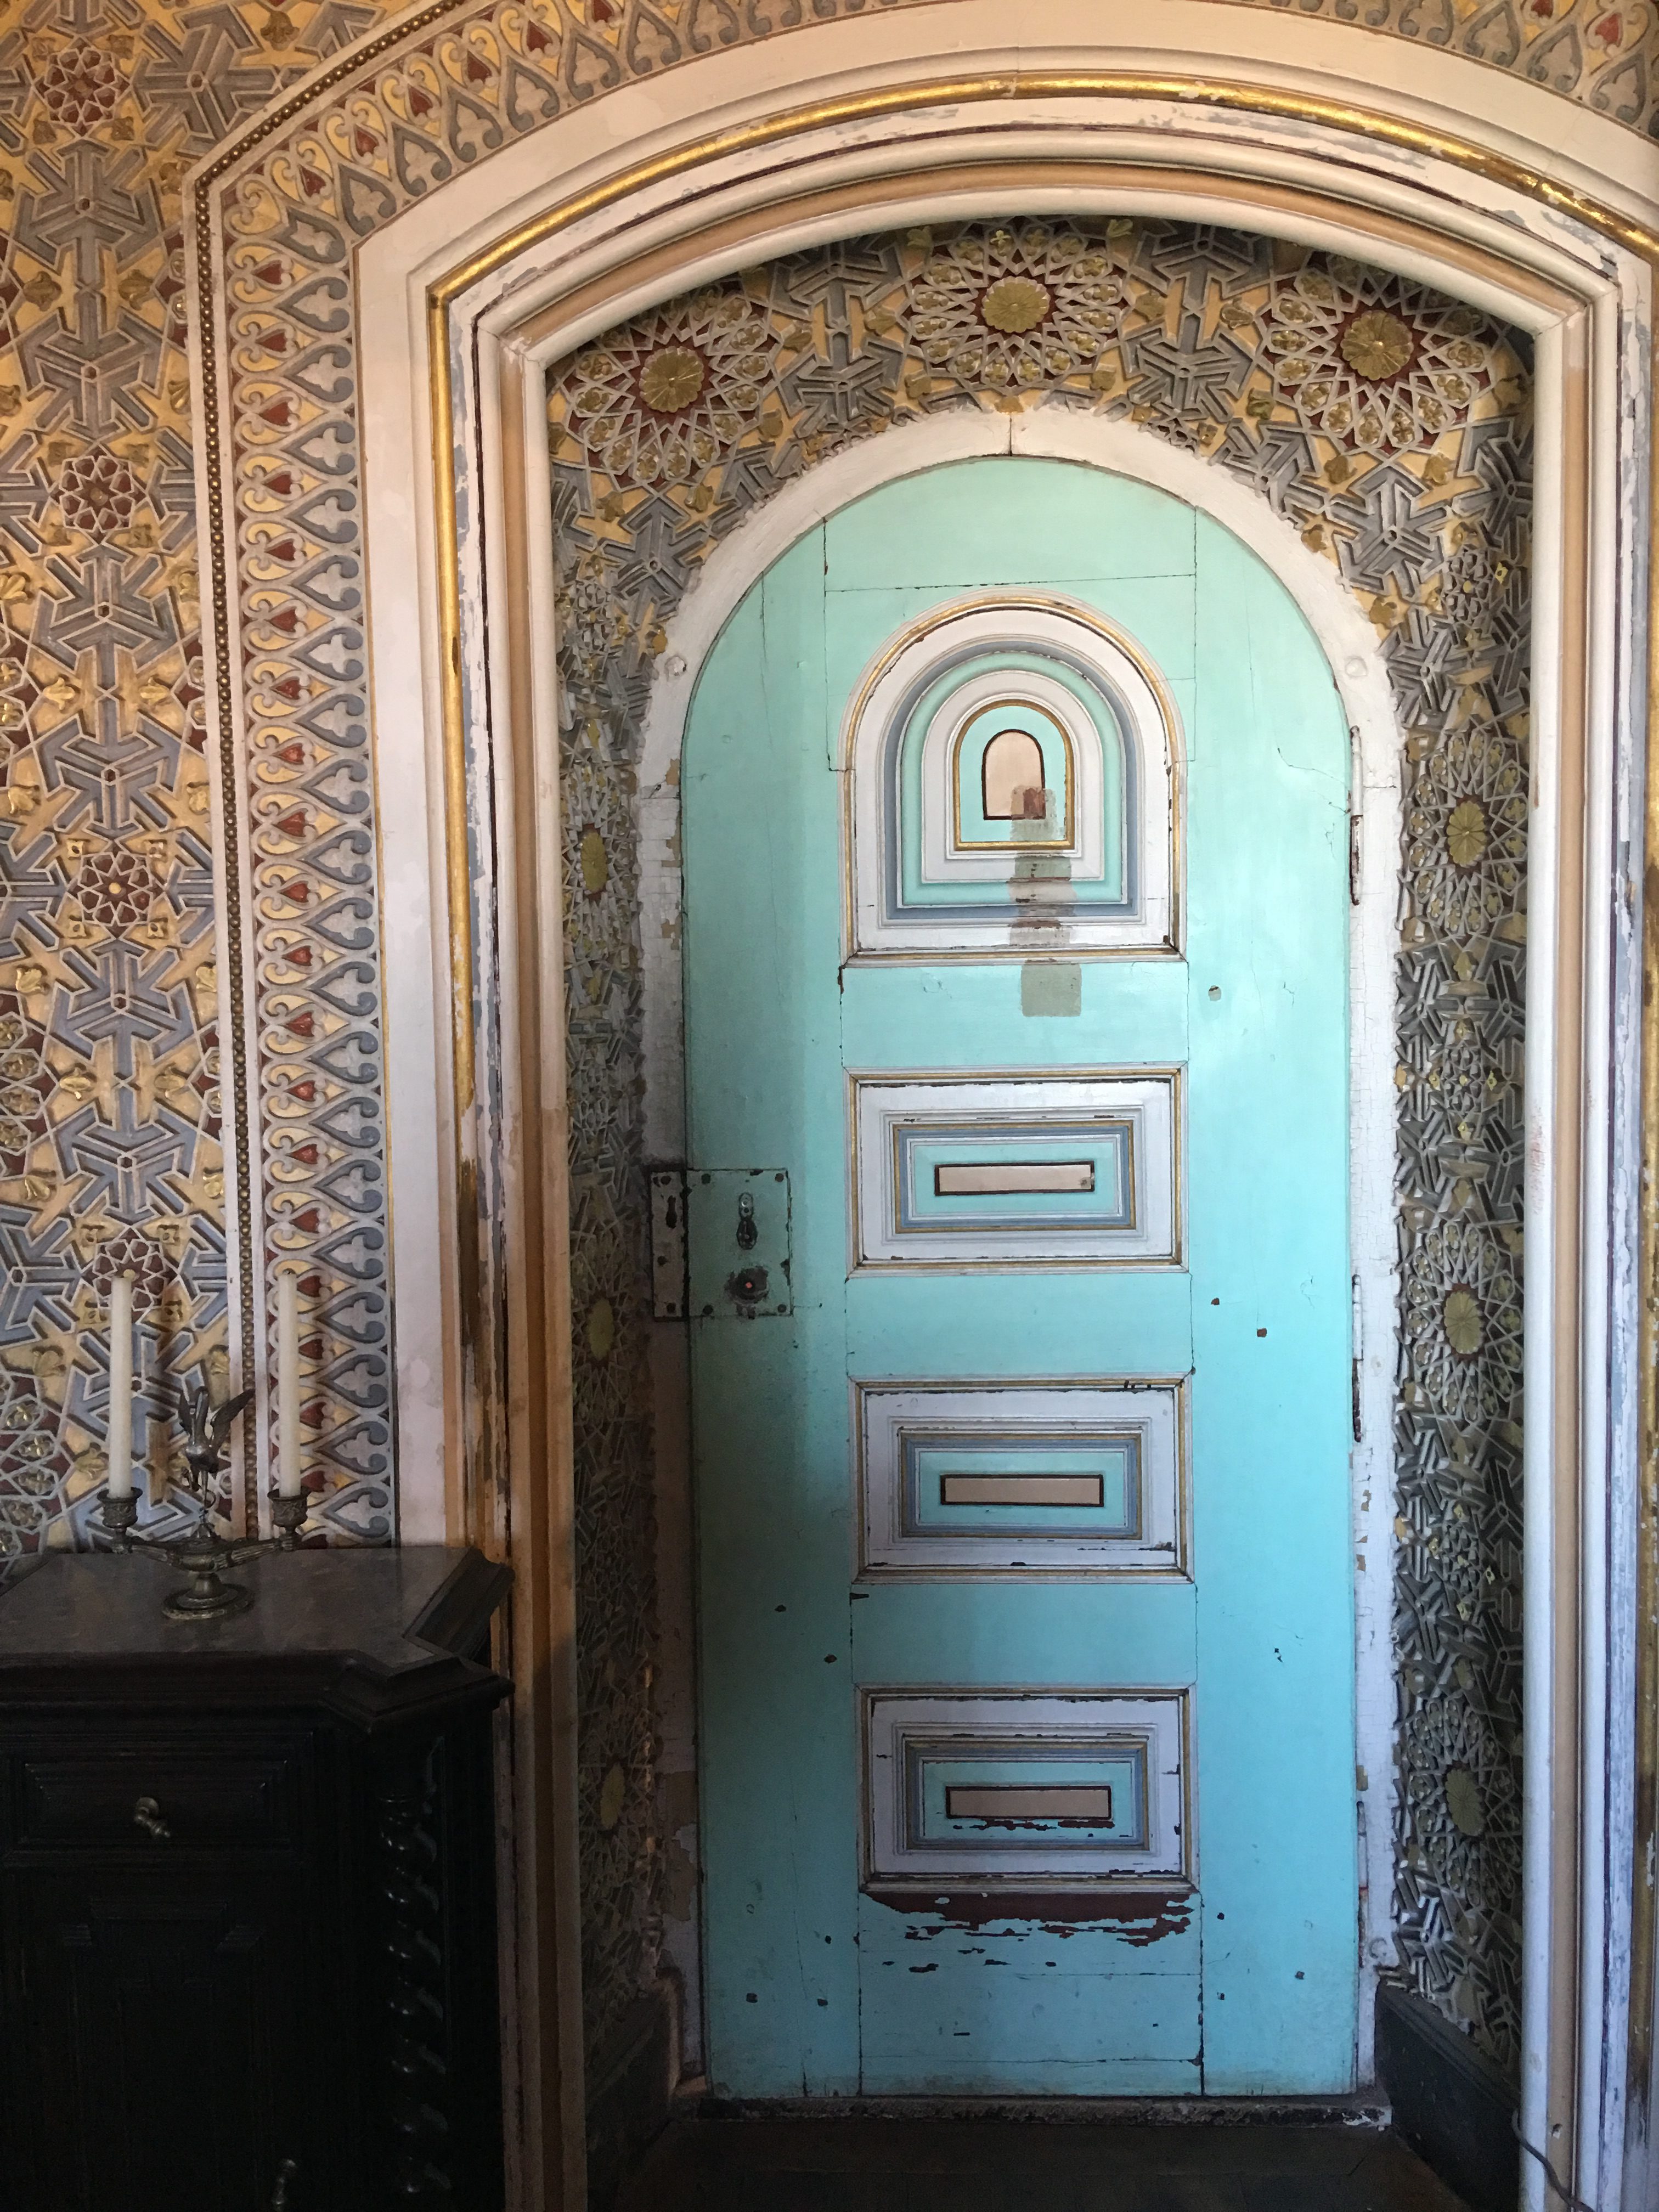 Intricate doors at Pena Palace